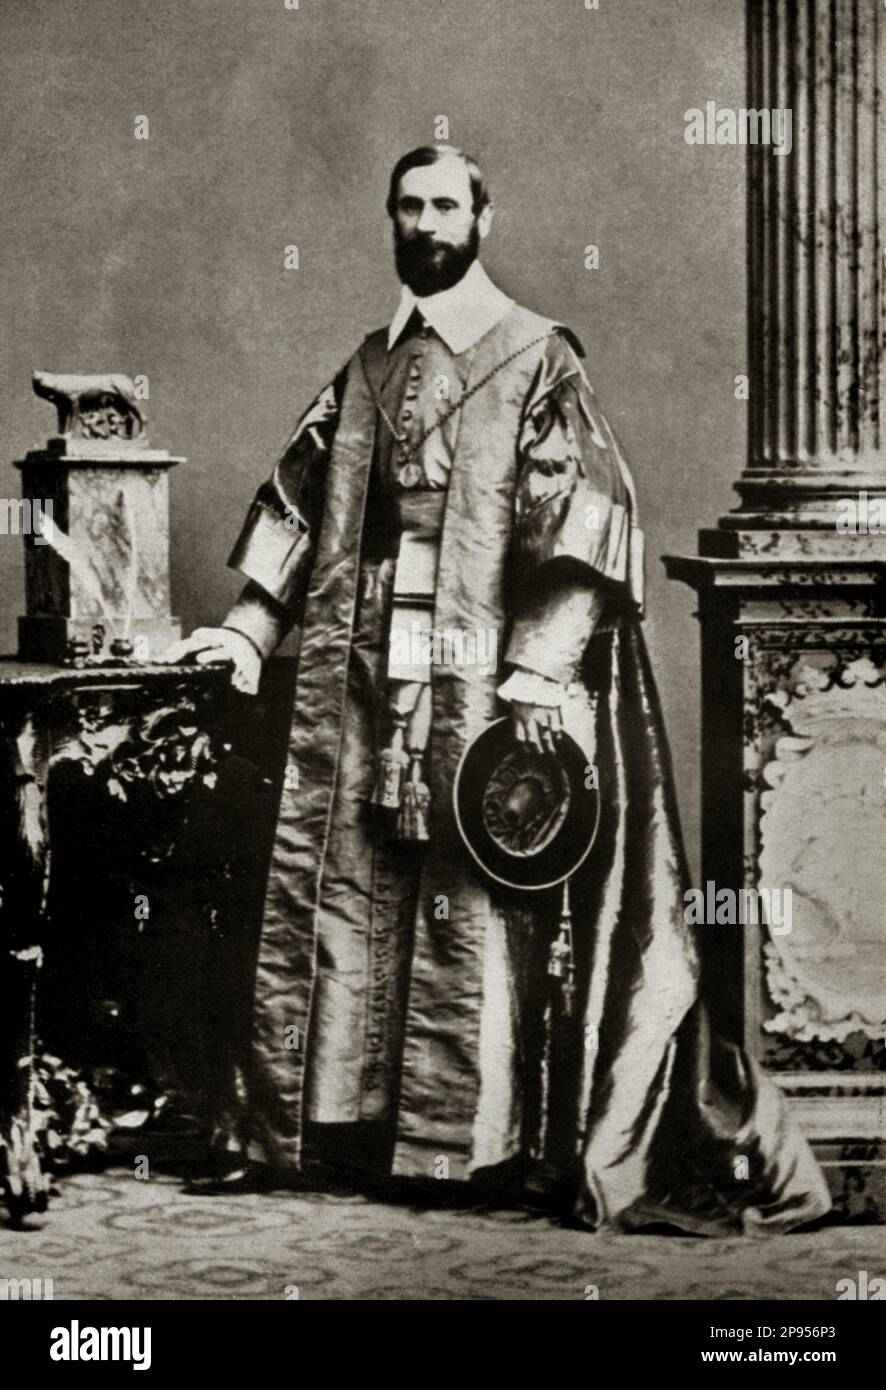 1865 c, Roma, ITALIA: Il marchese FRANCESCO CAVALLETTI de ROSSI de TUBERO Belloni Rondanini , ultimo SENATORE DI ROMA (dal 1865 al 1870) alla corte di Pio IX. - RISORGIMENTO - NOBILTÀ - NOBILI - nobiltà italiana - REALI - ROYALTY - barba - barba - barba - prelato - prete - nobiltà italiana - nobiltà italiana - VATICANO - VATICANO --- Archivio GBB Foto Stock